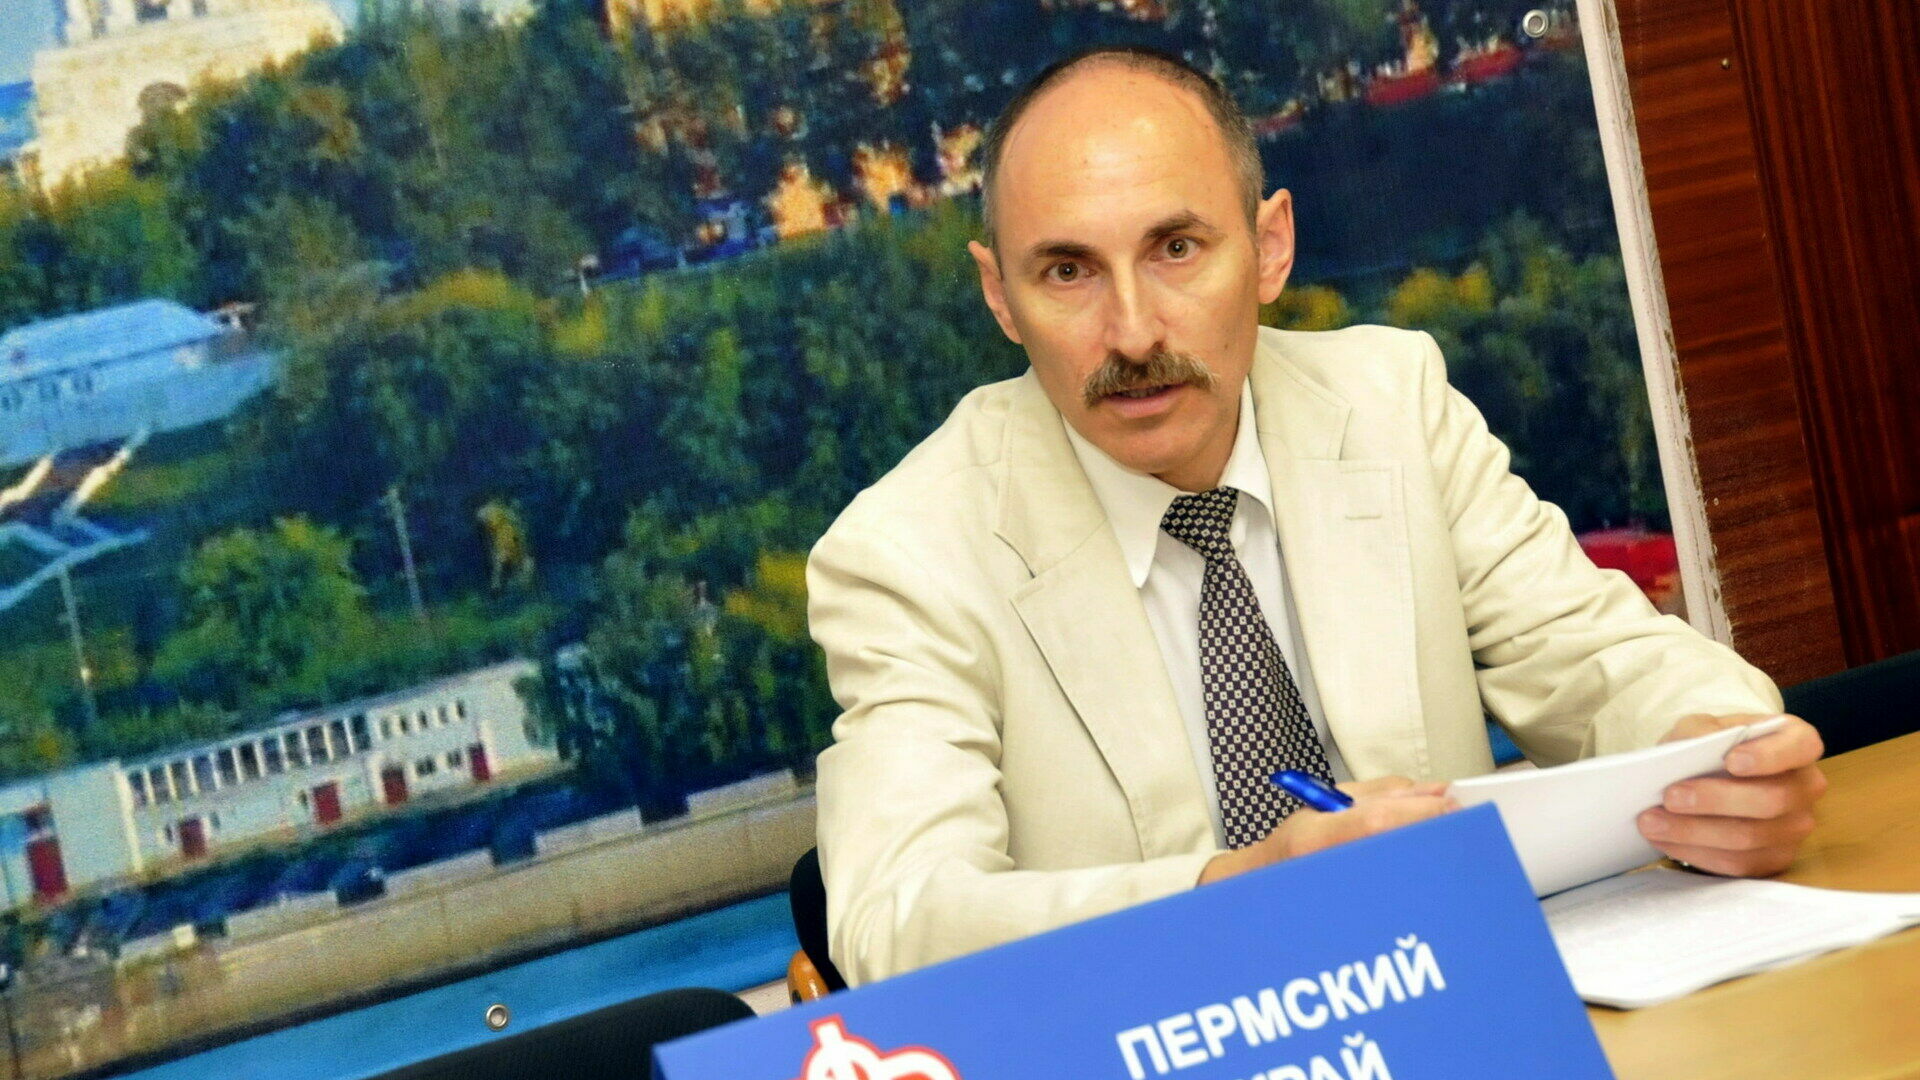 Руководитель отделения ПФР в Прикамье покинул должность